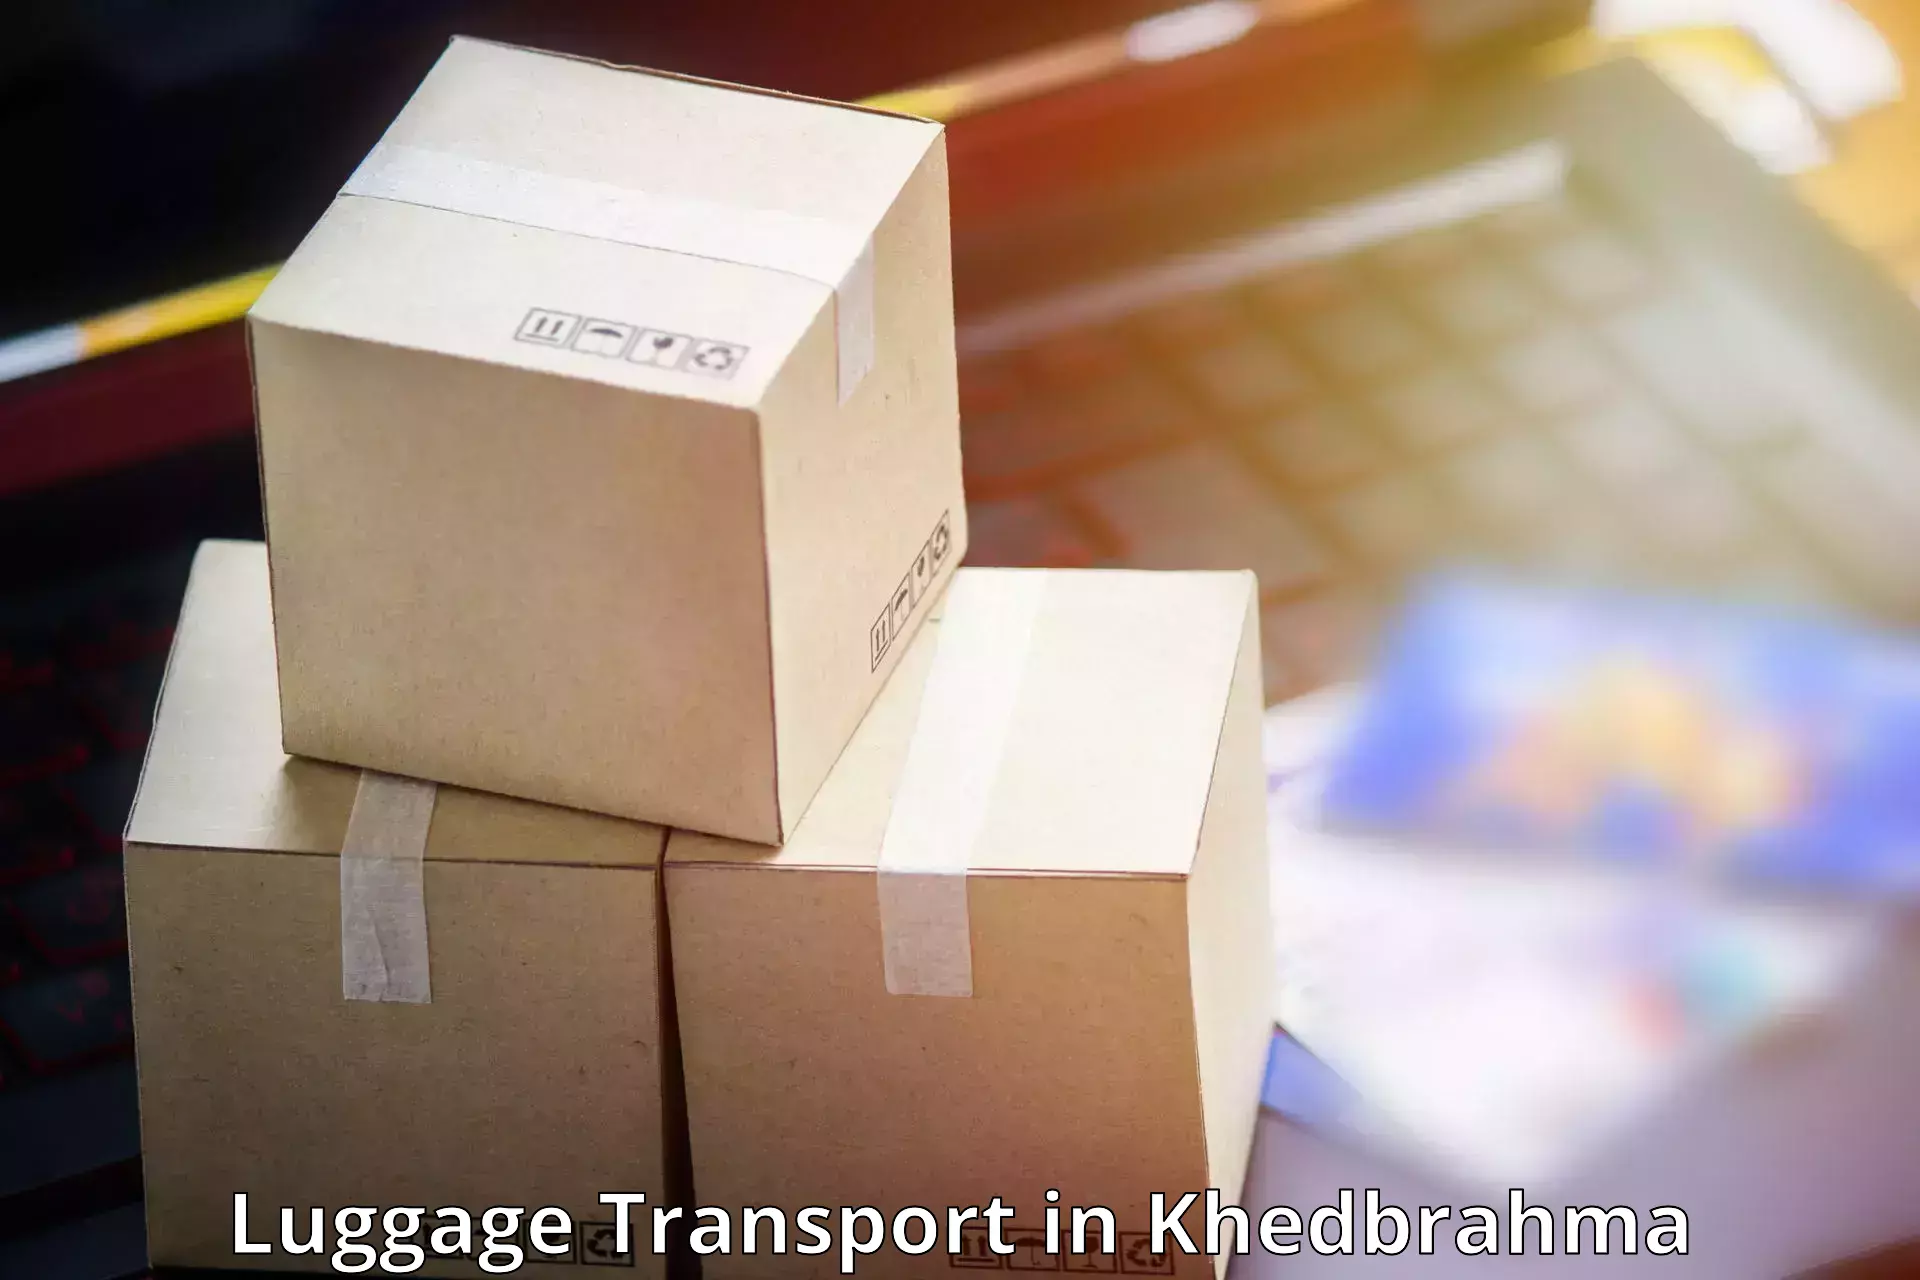 Baggage transport updates in Khedbrahma